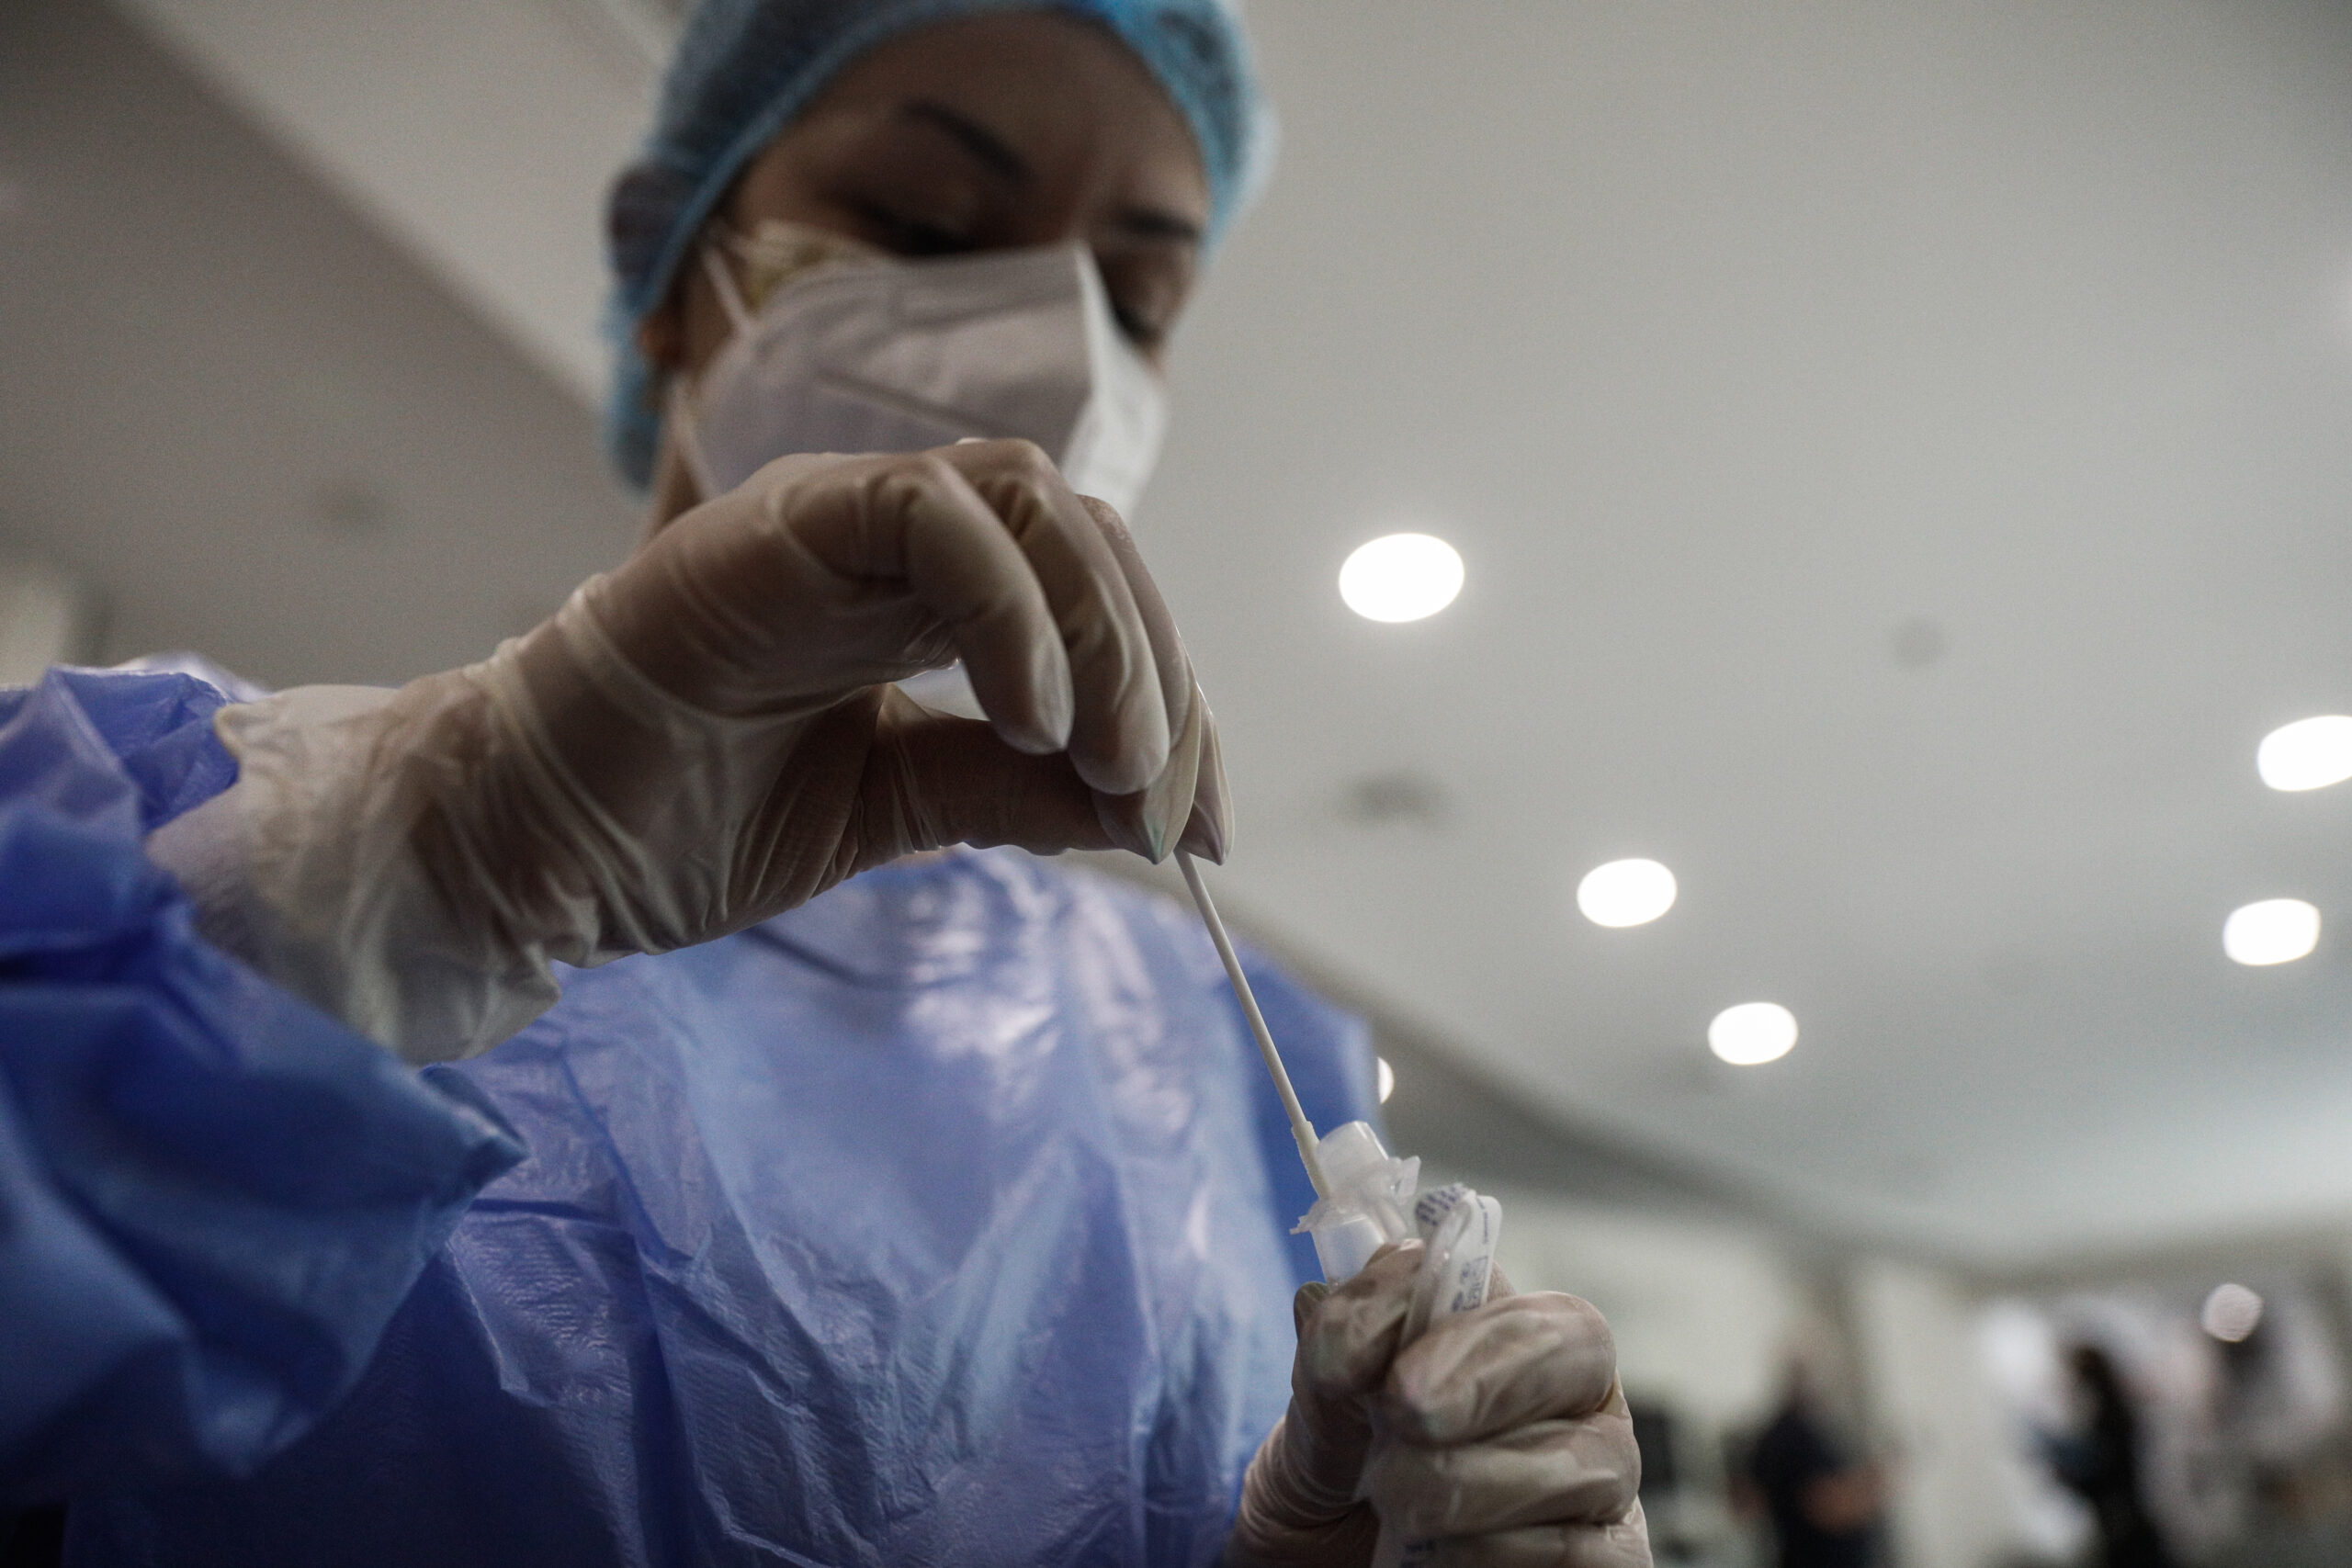 Κορονοϊός: Σύσταση για μάσκα σε κλειστούς χώρους, νοσοκομεία και ΜΜΜ – Περίπου 200 εισαγωγές ημερησίως